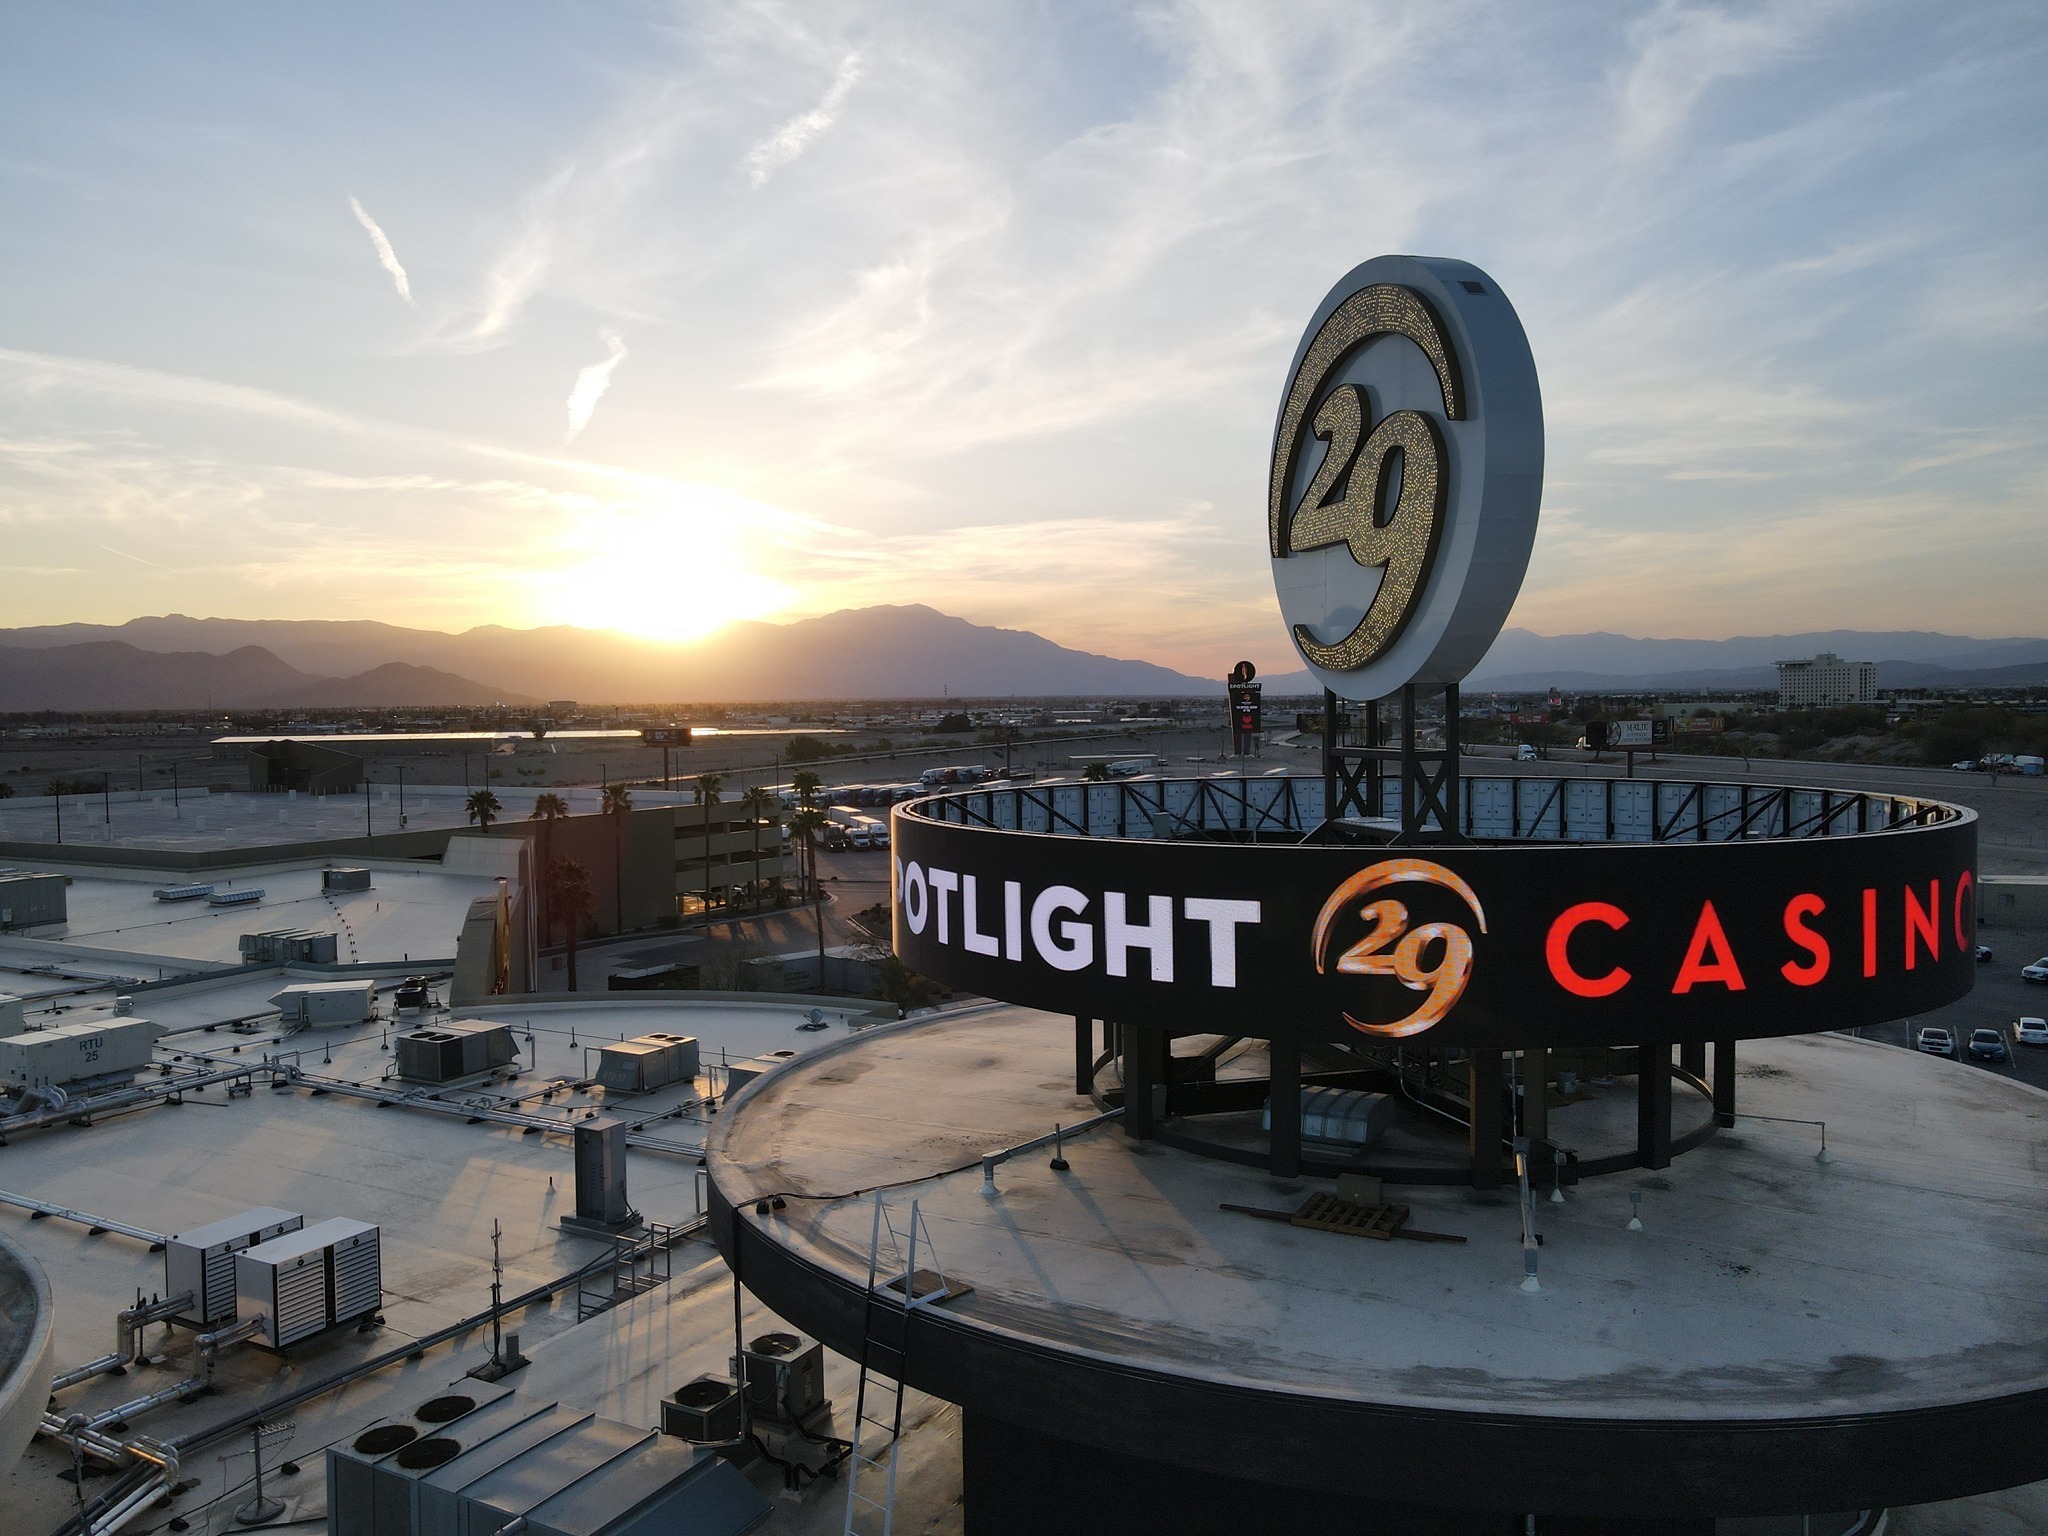 Photo of Spotlight 29 Casino, Coachella, CA